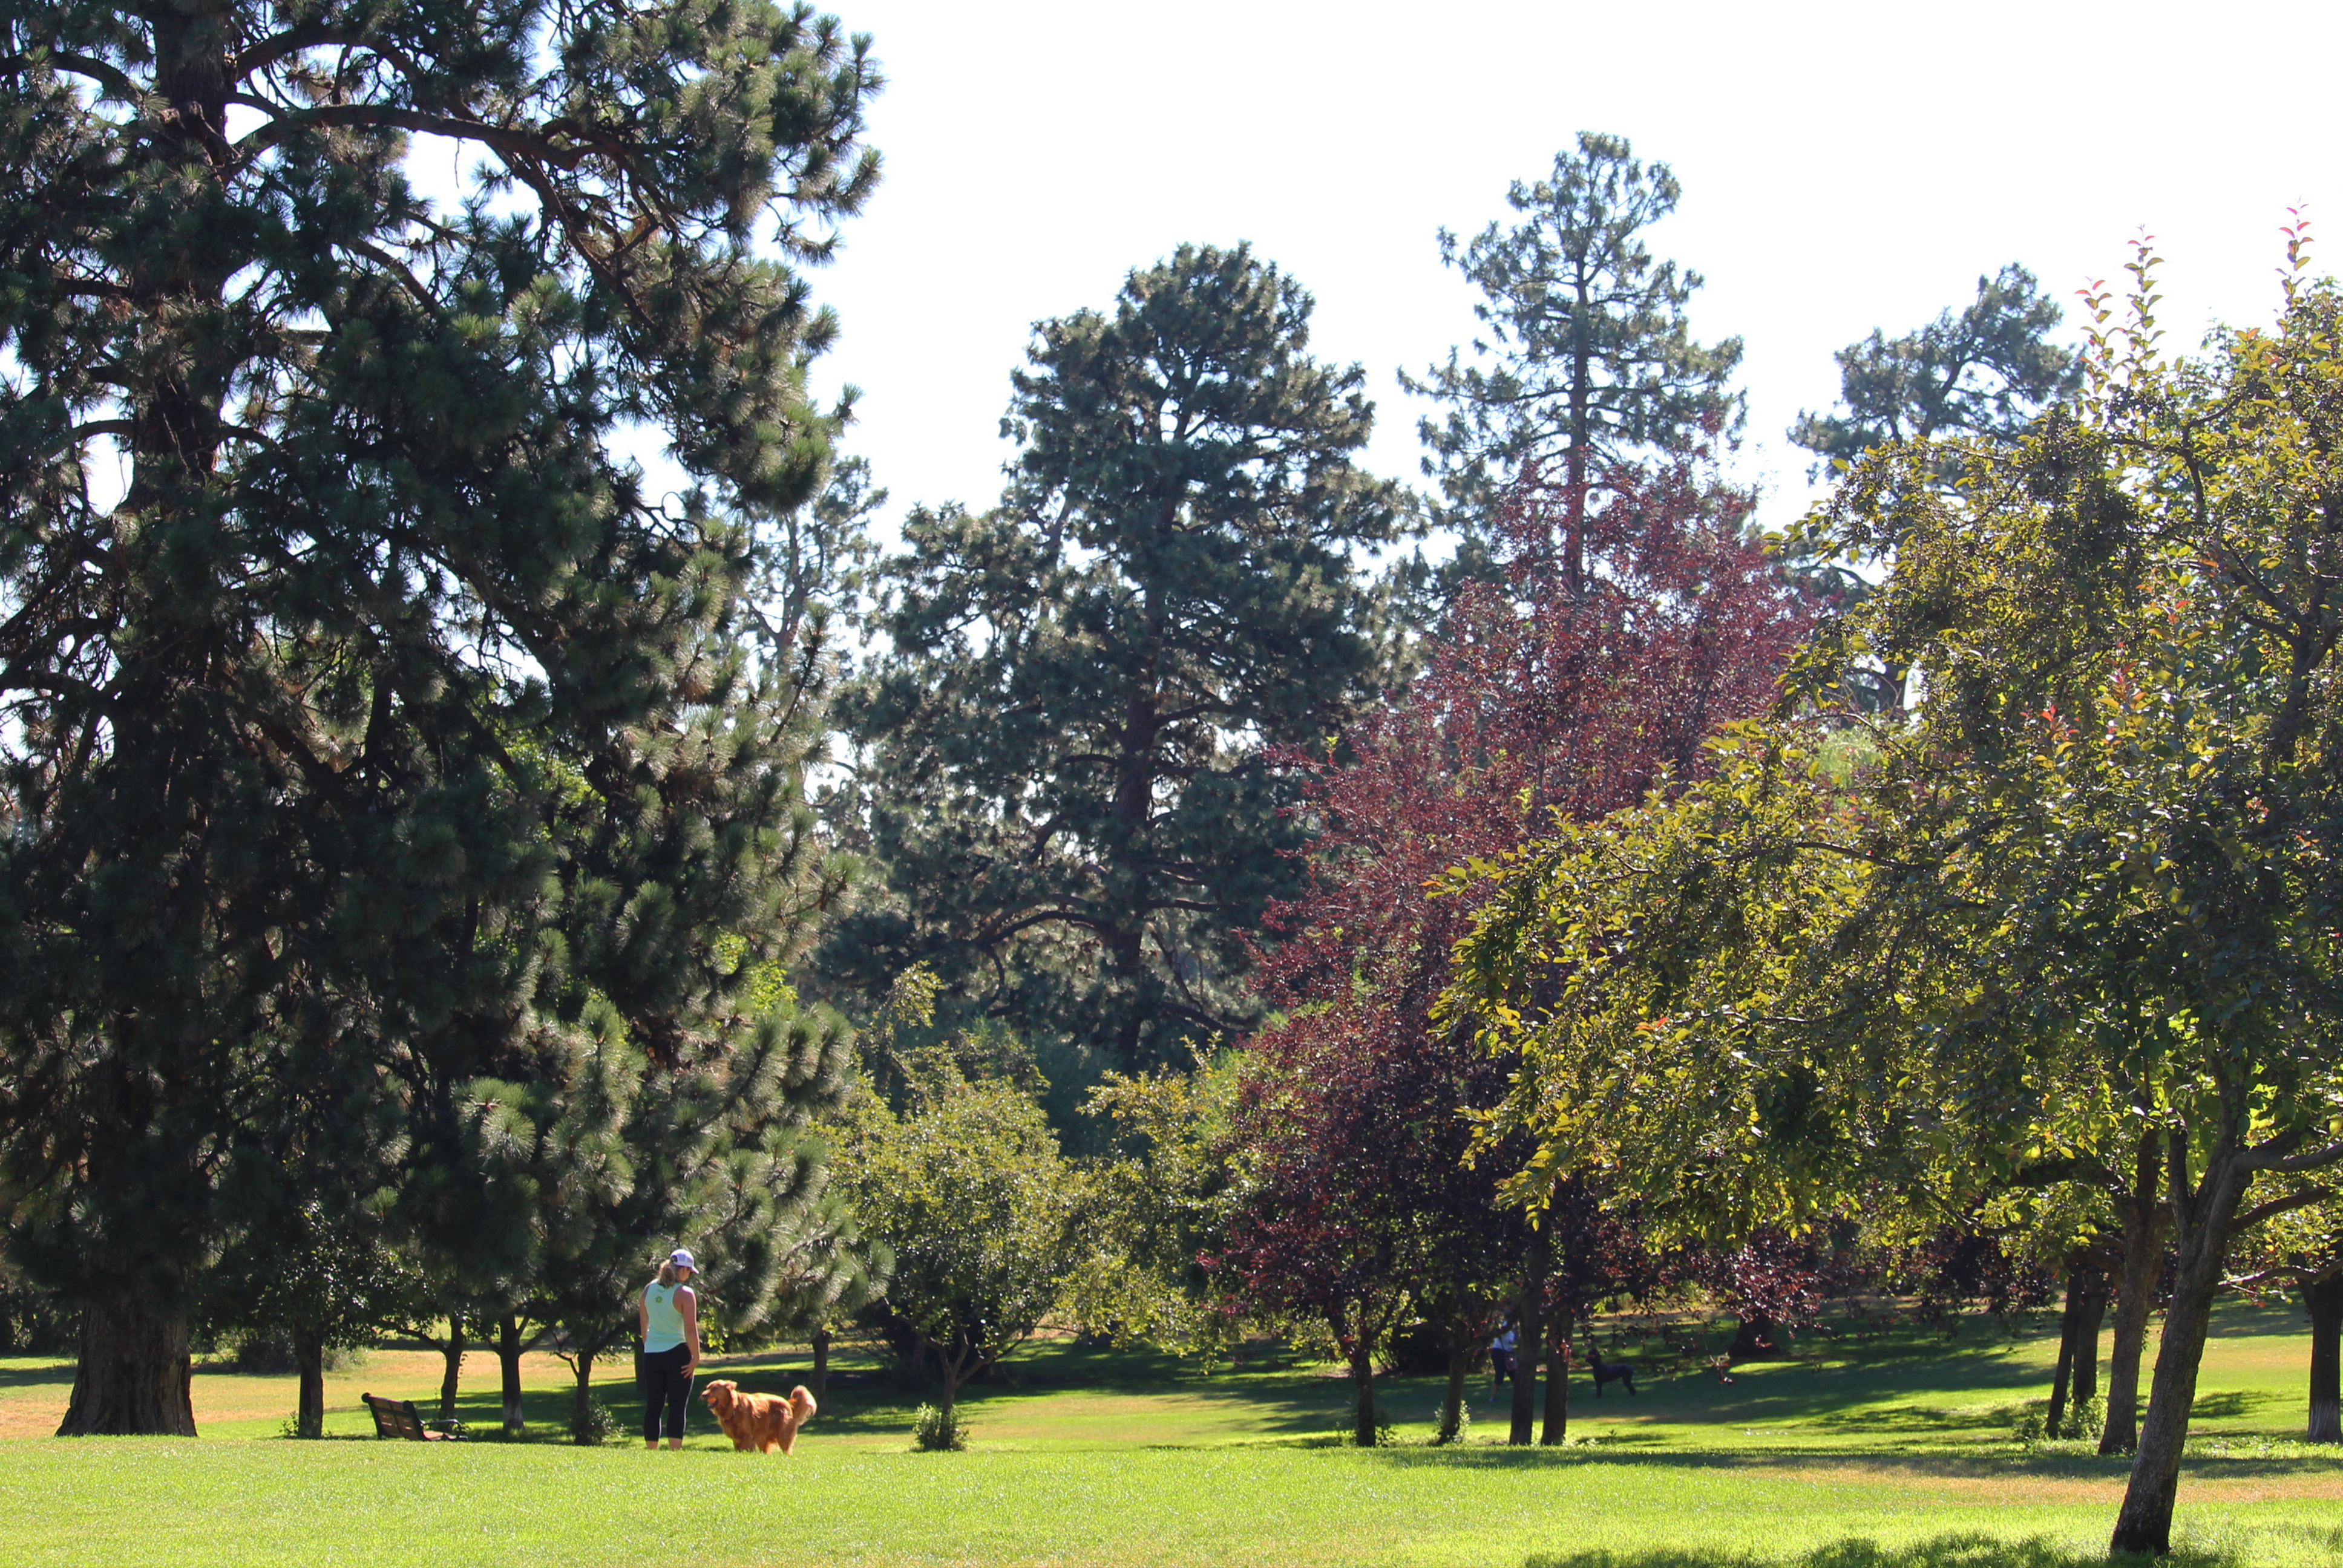 Hollinshead Park in Bend Oregon